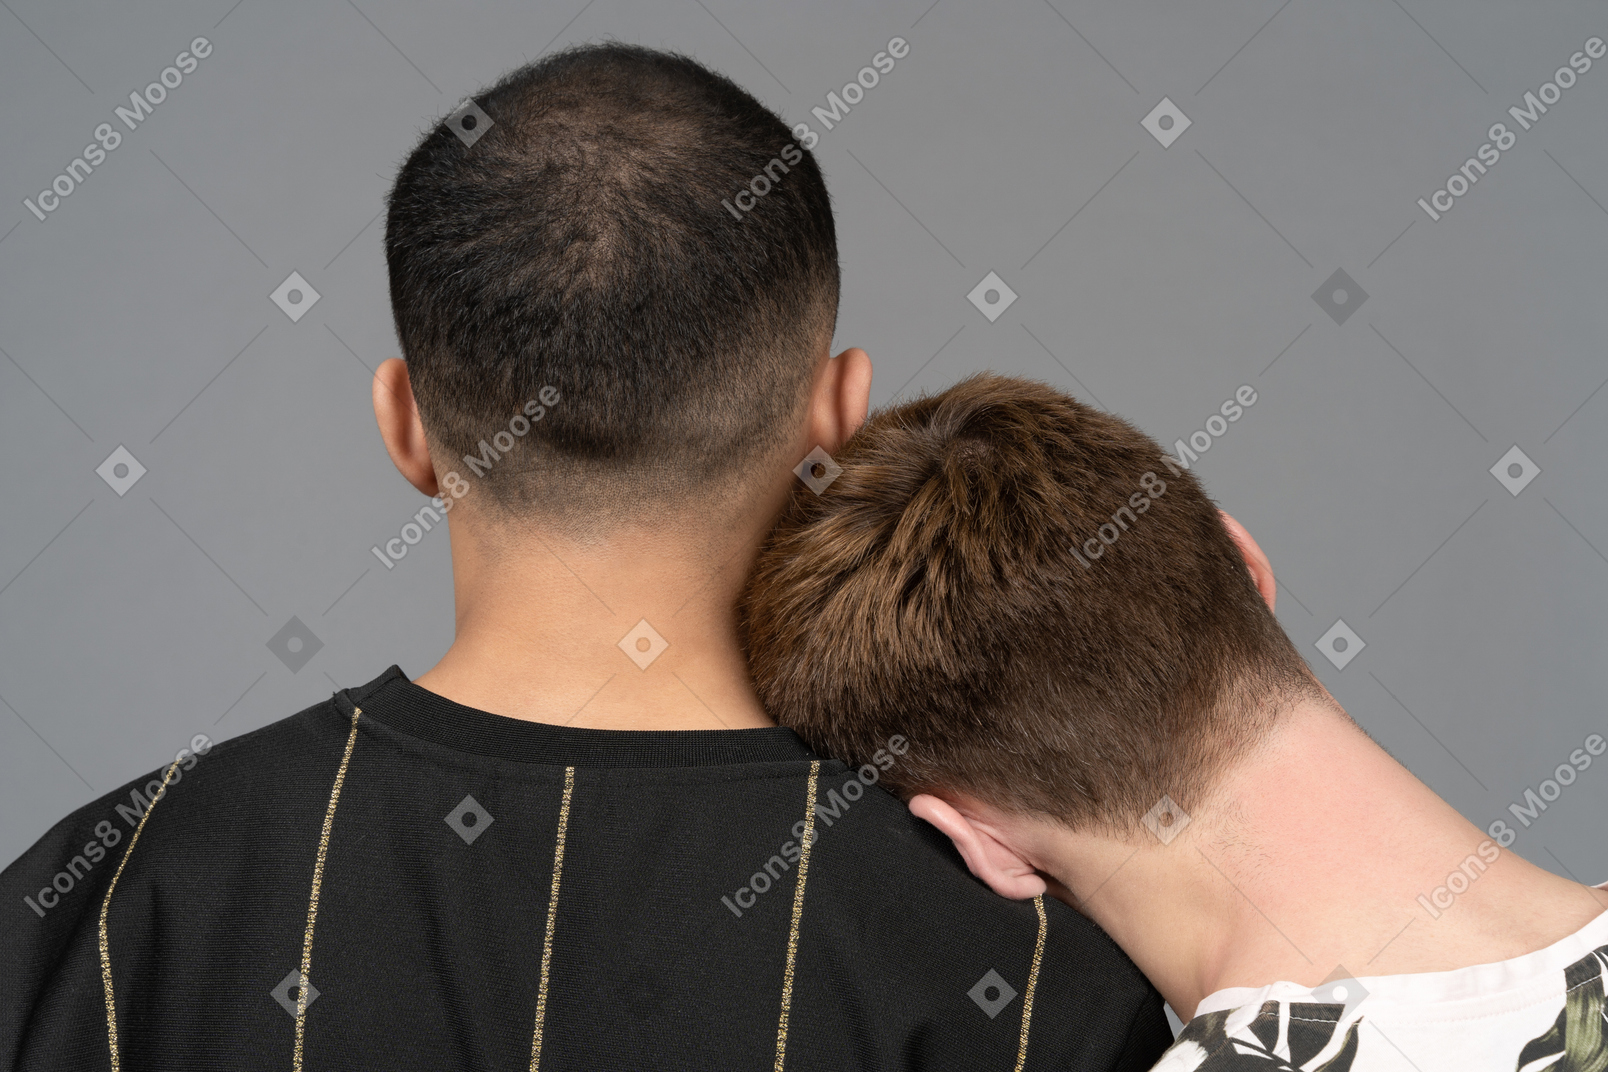 Vista traseira do jovem colocando a cabeça no ombro do parceiro